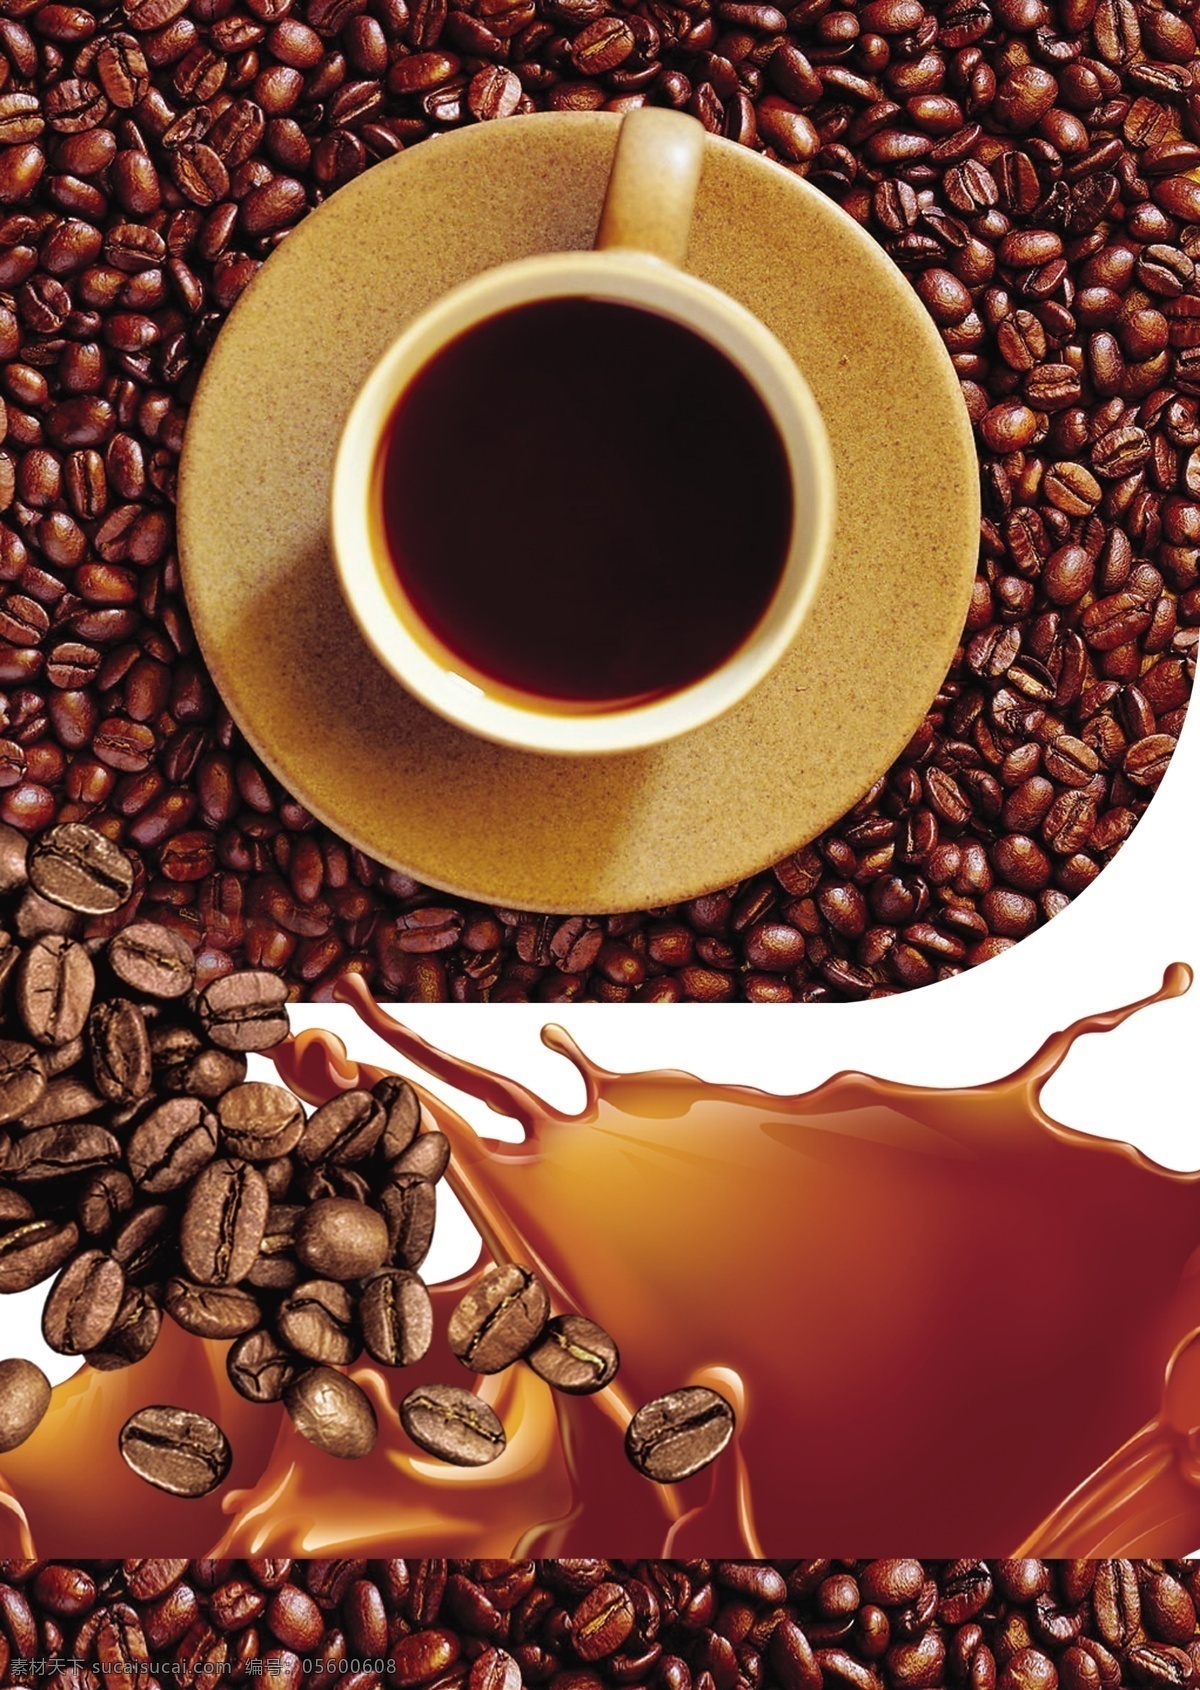 广告设计模板 黑咖啡 咖啡 咖啡广告 咖啡海报 咖啡模板下载 咖啡素材下载 咖啡宣传 宣传单 咖啡饮品 可可咖啡 饮品 源文件 psd源文件 餐饮素材